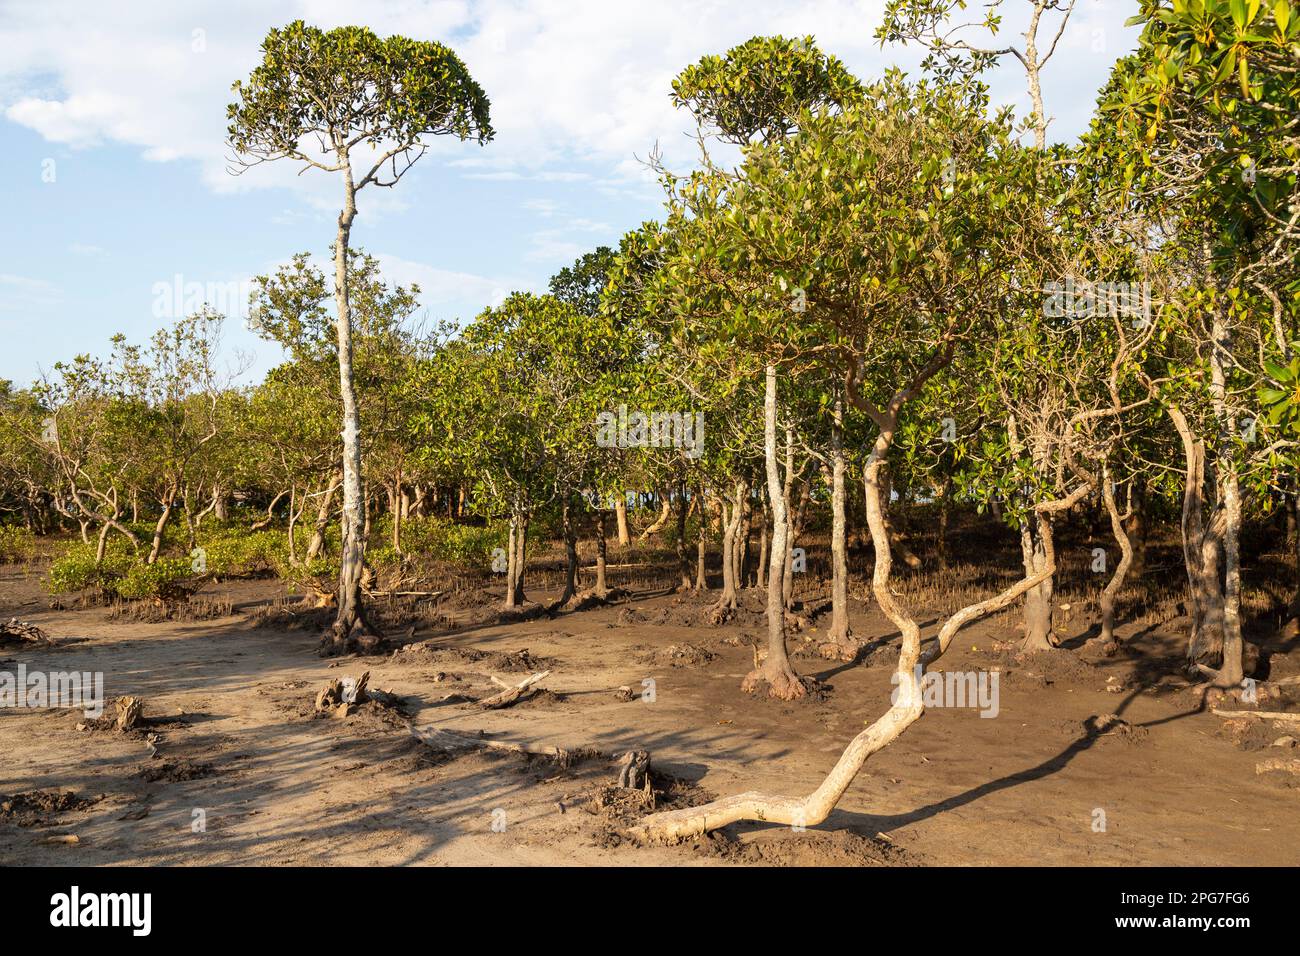 Una stalla mista di mangrove nere (Bruguieria gymnorrhiza) e mangrovie bianche (marina di Avicennia) nelle paludi di mangrovie di Mntafufu Foto Stock